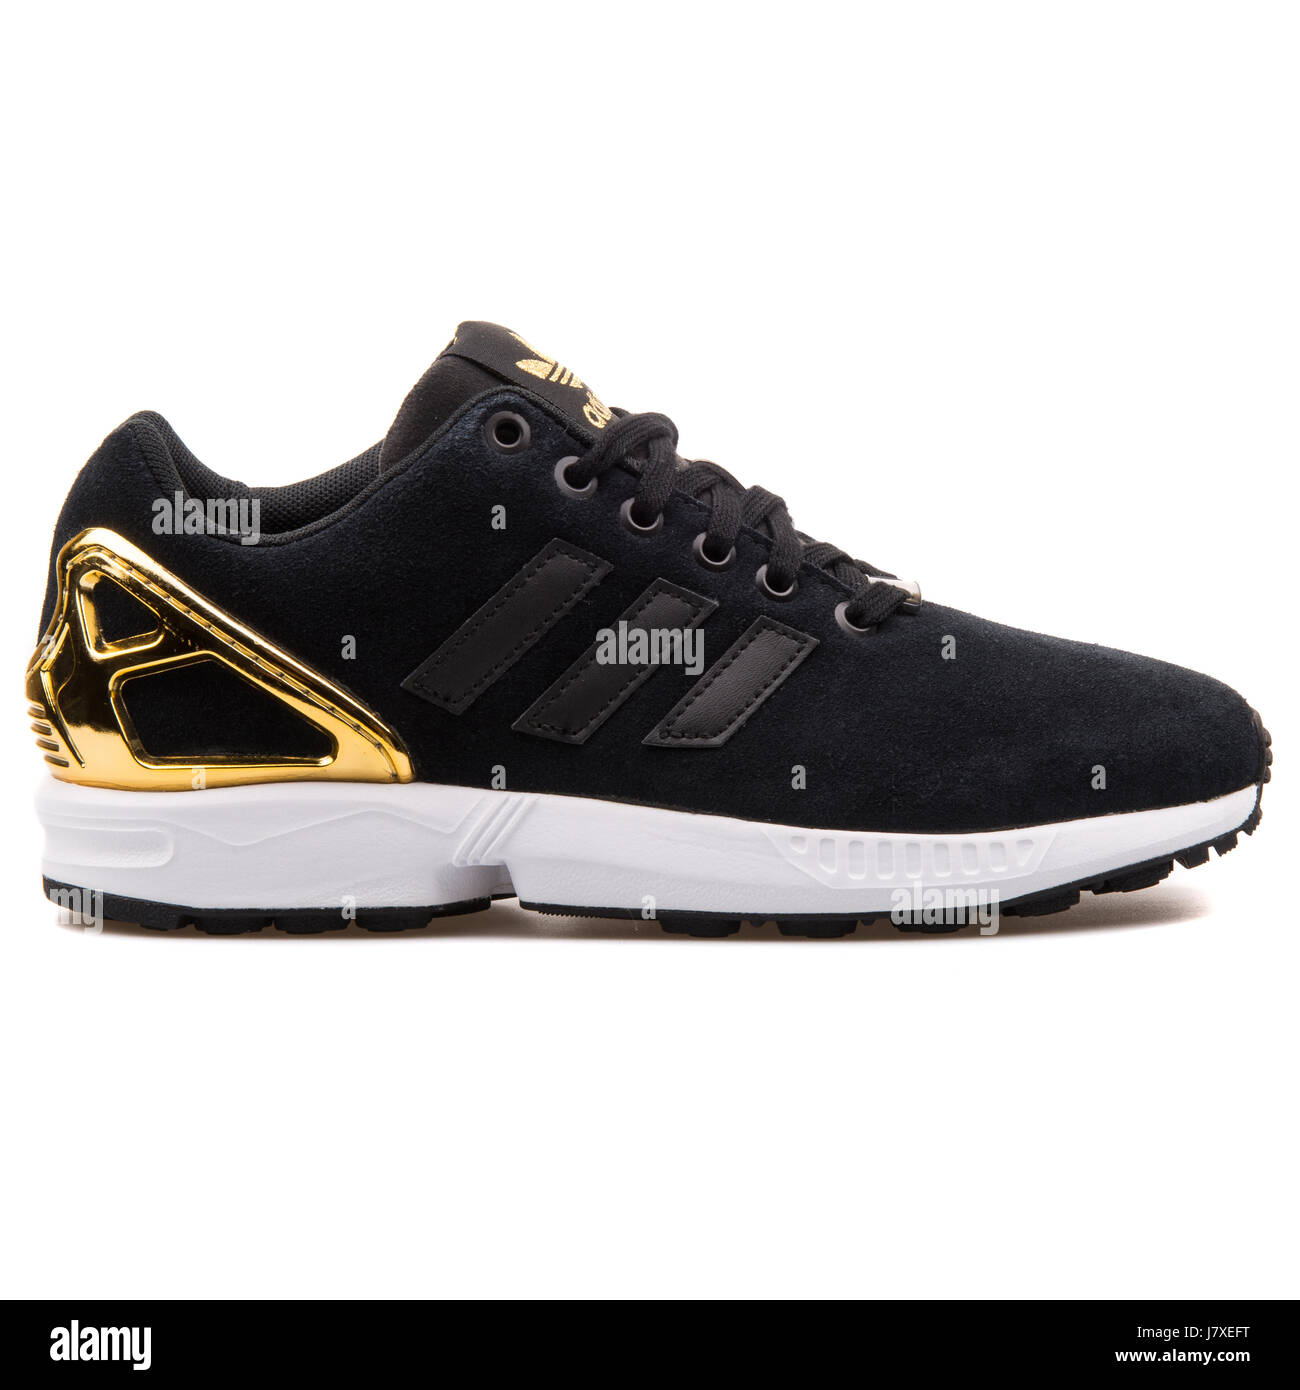 Adidas ZX Flux W negro y oro Mujer Sneakers - B35319 Fotografía de stock -  Alamy